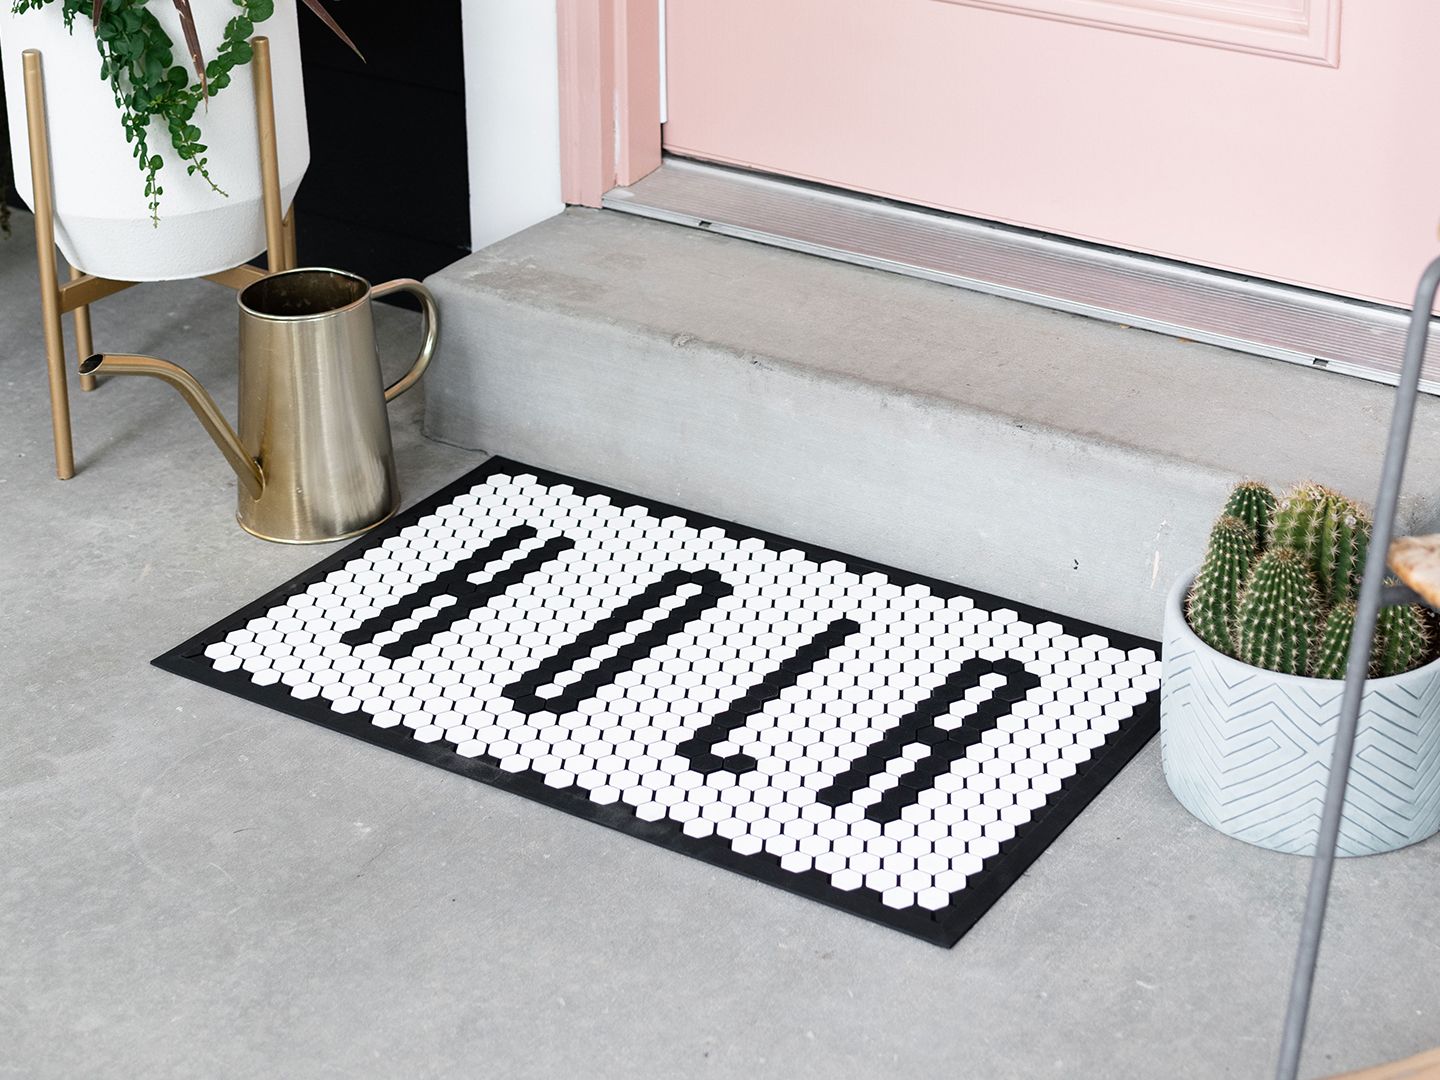 A tile mat being used as a door mat